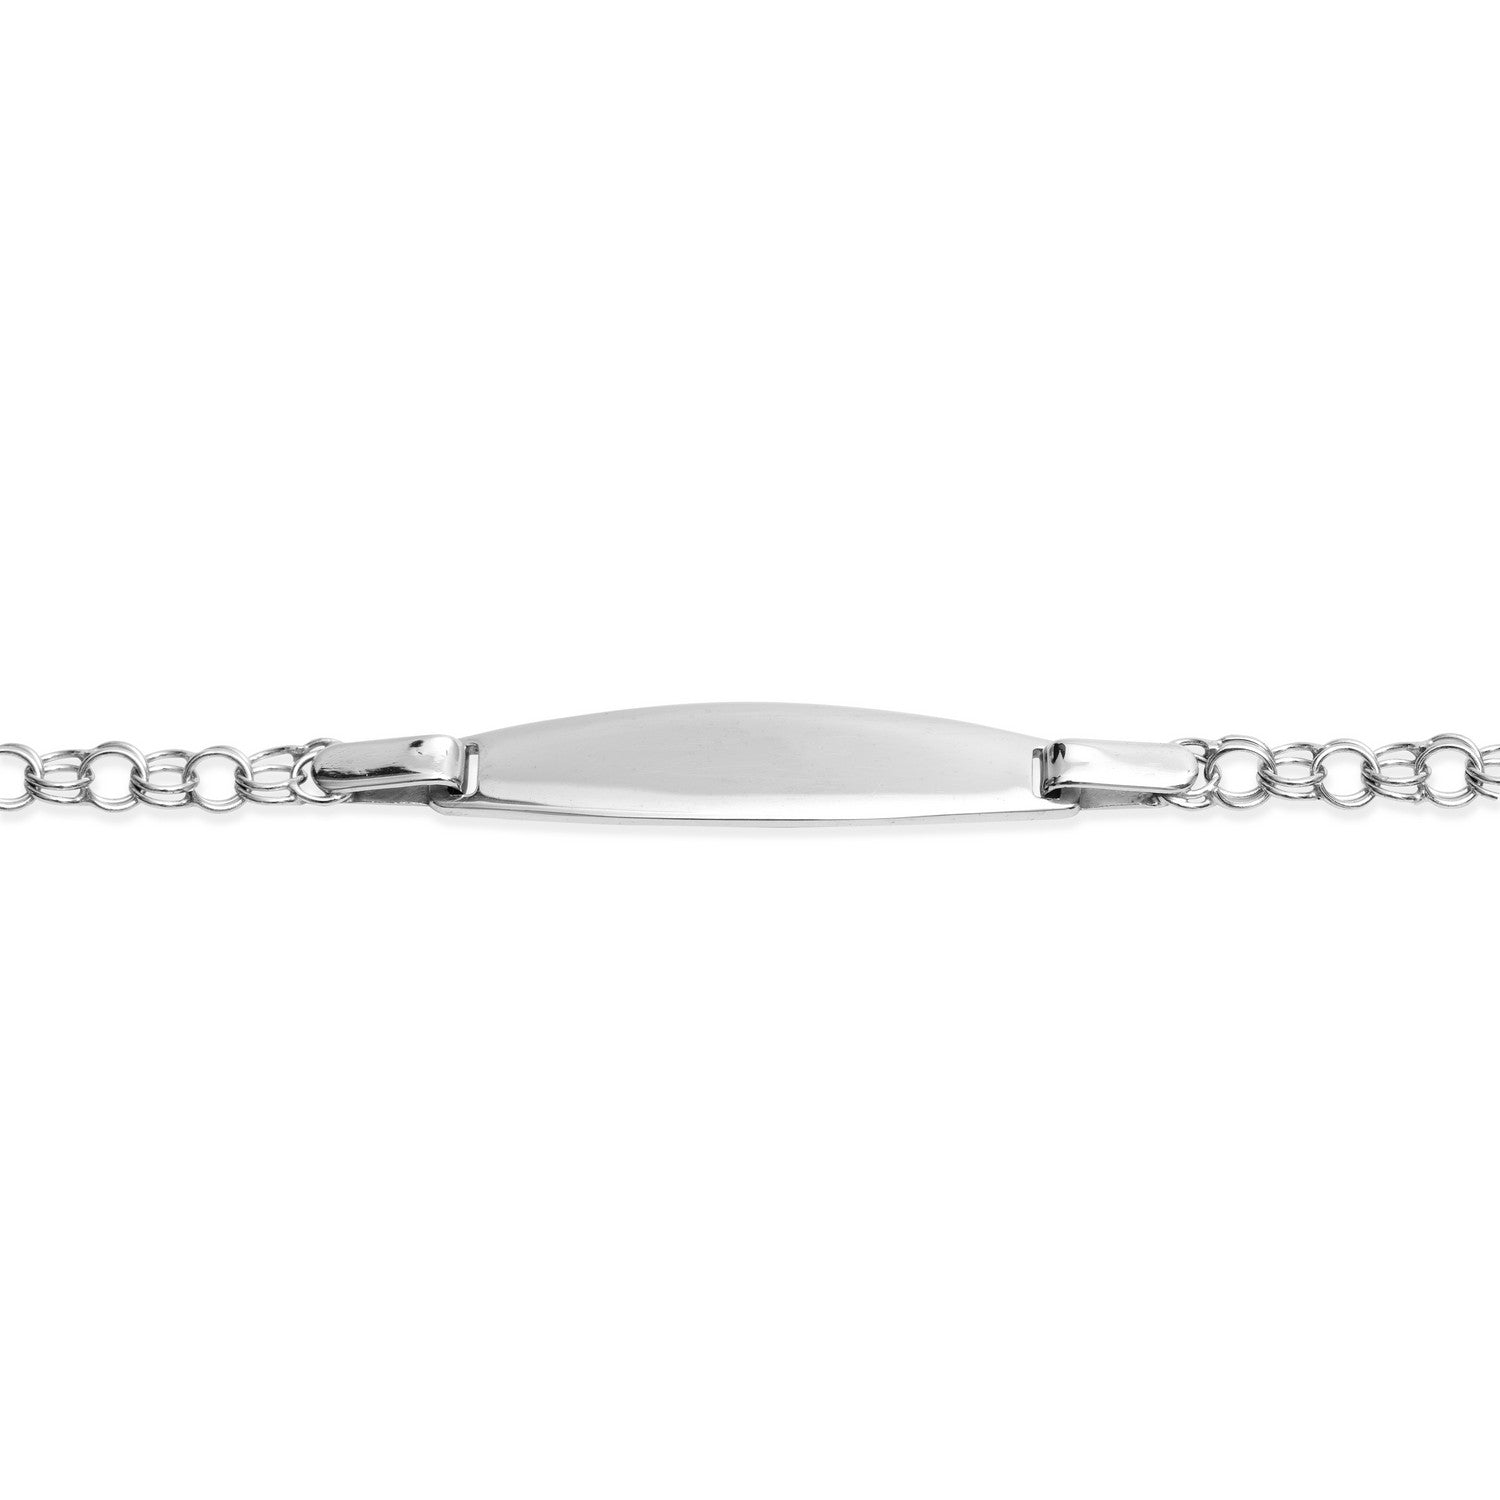 KinderArmband Silber 925 rhodiniert 14cm mit Gravur